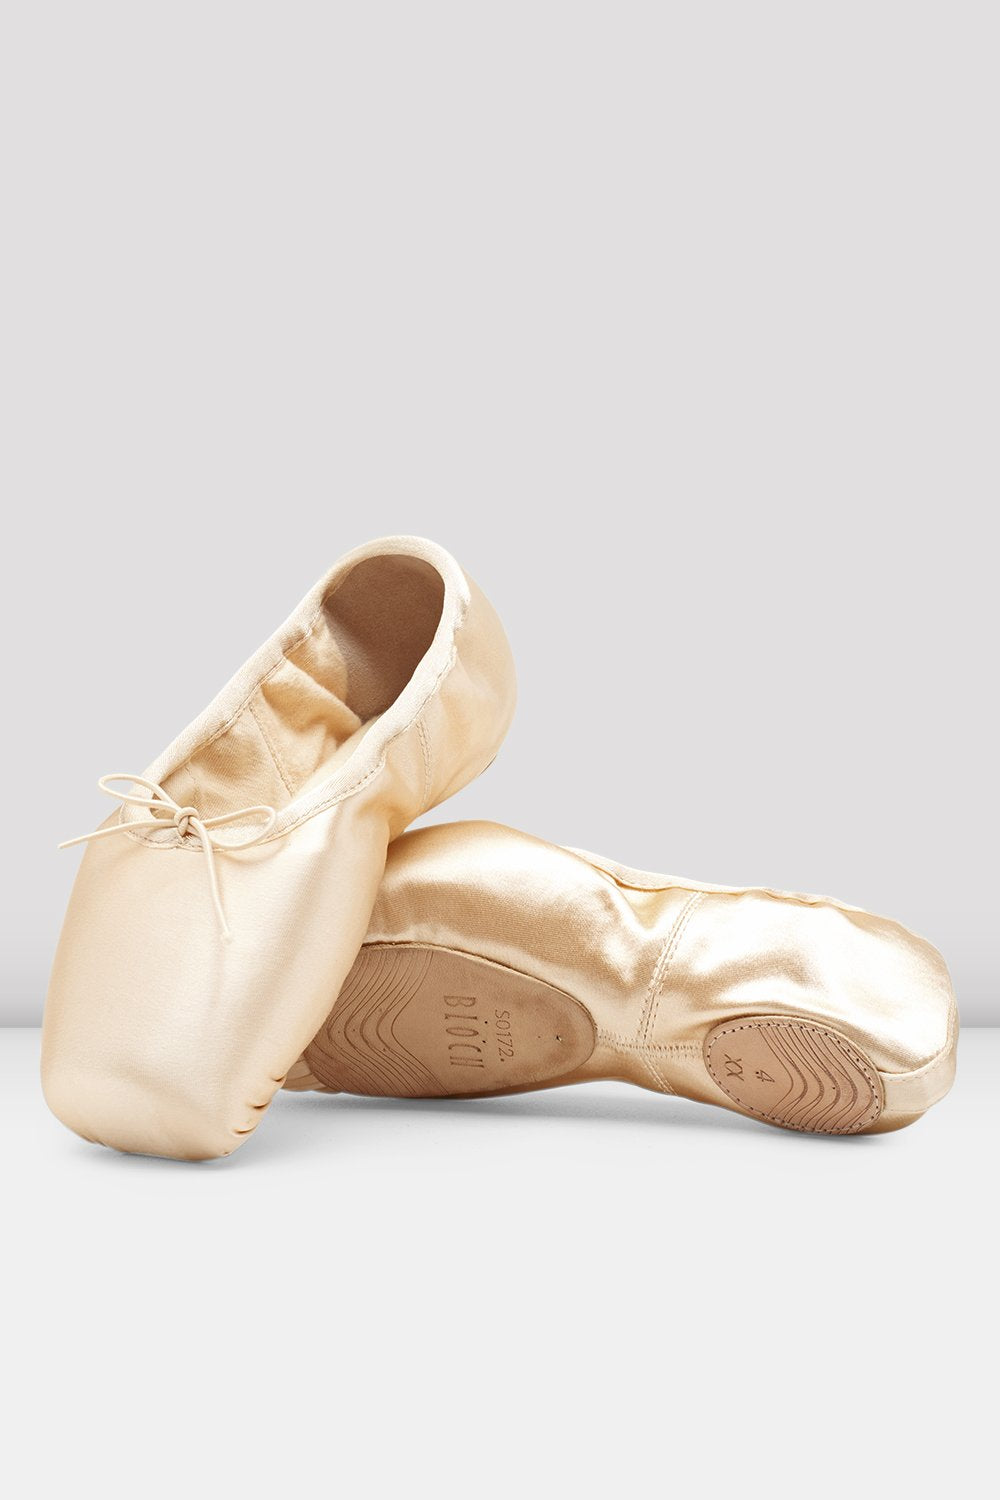 Bloch ES | El hogar los zapatos de baile " 1932 – Dance EU